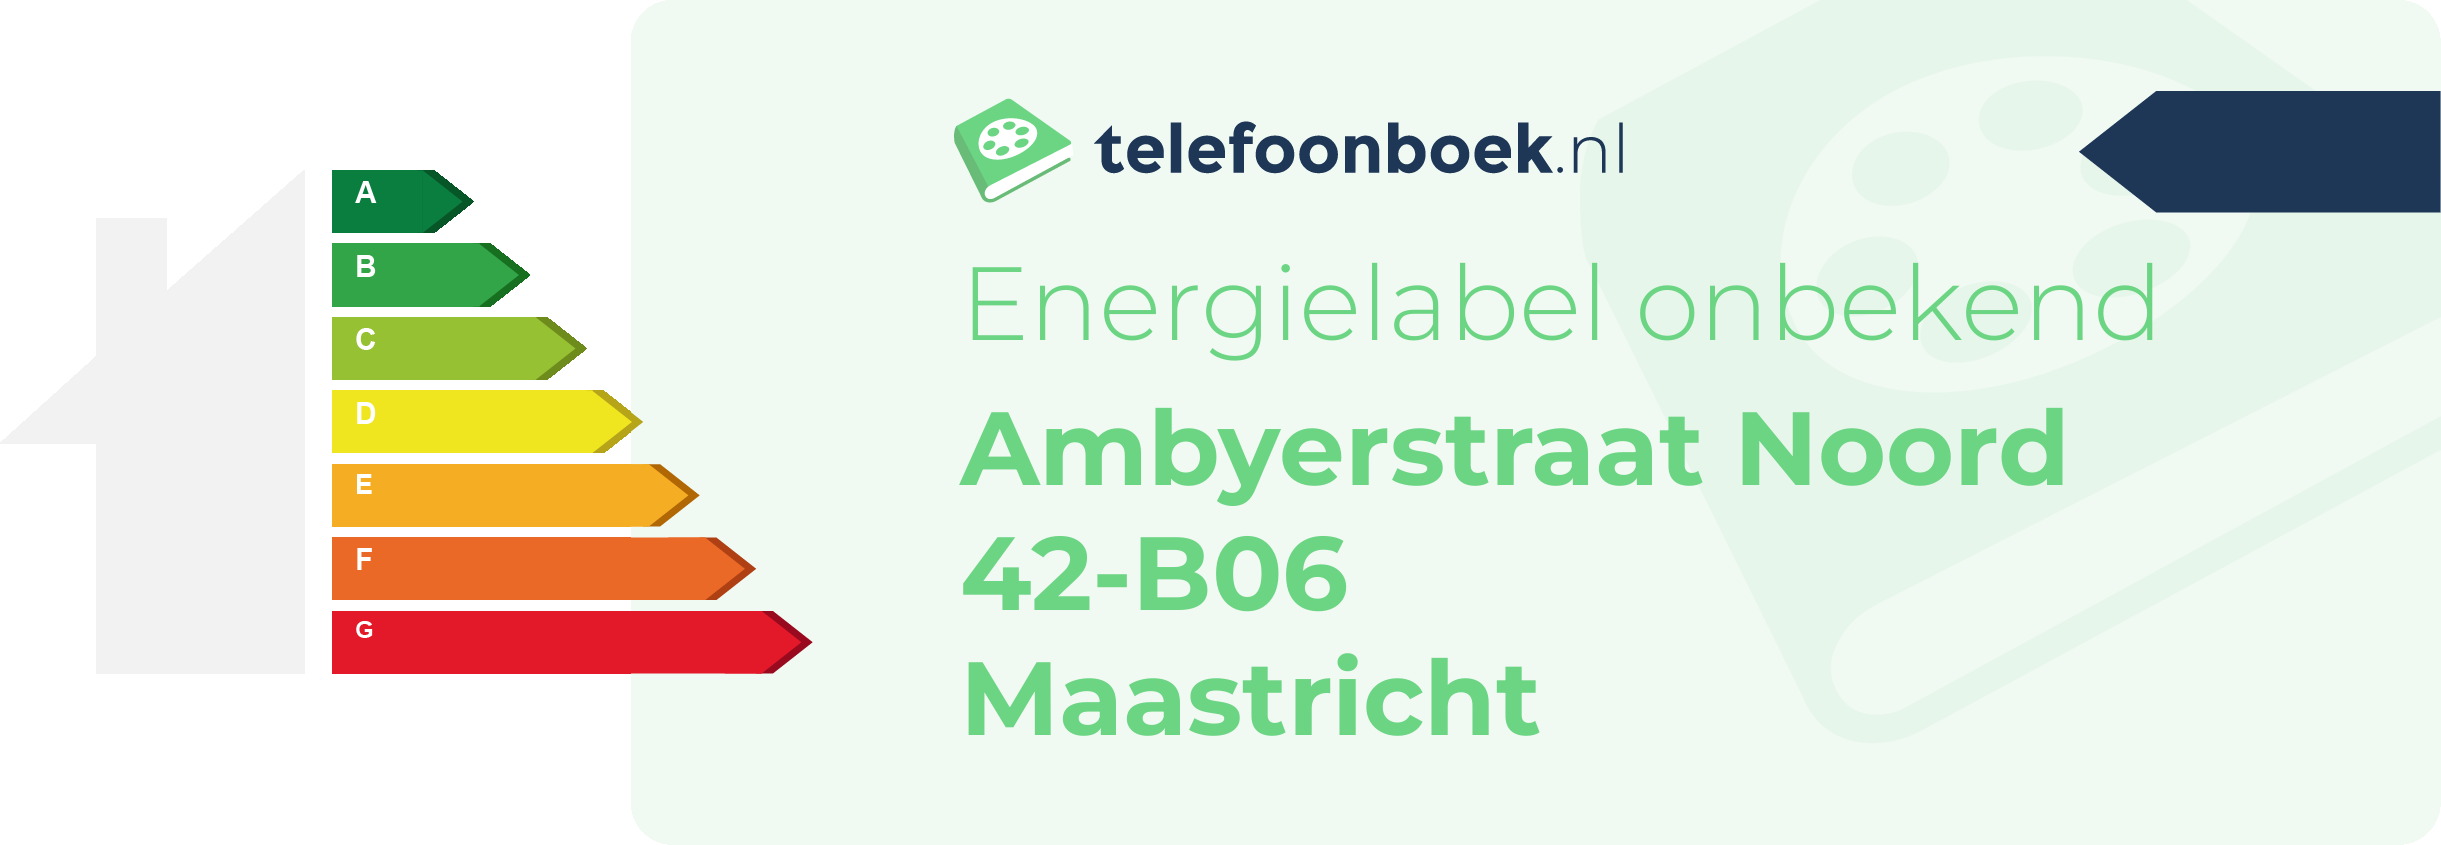 Energielabel Ambyerstraat Noord 42-B06 Maastricht